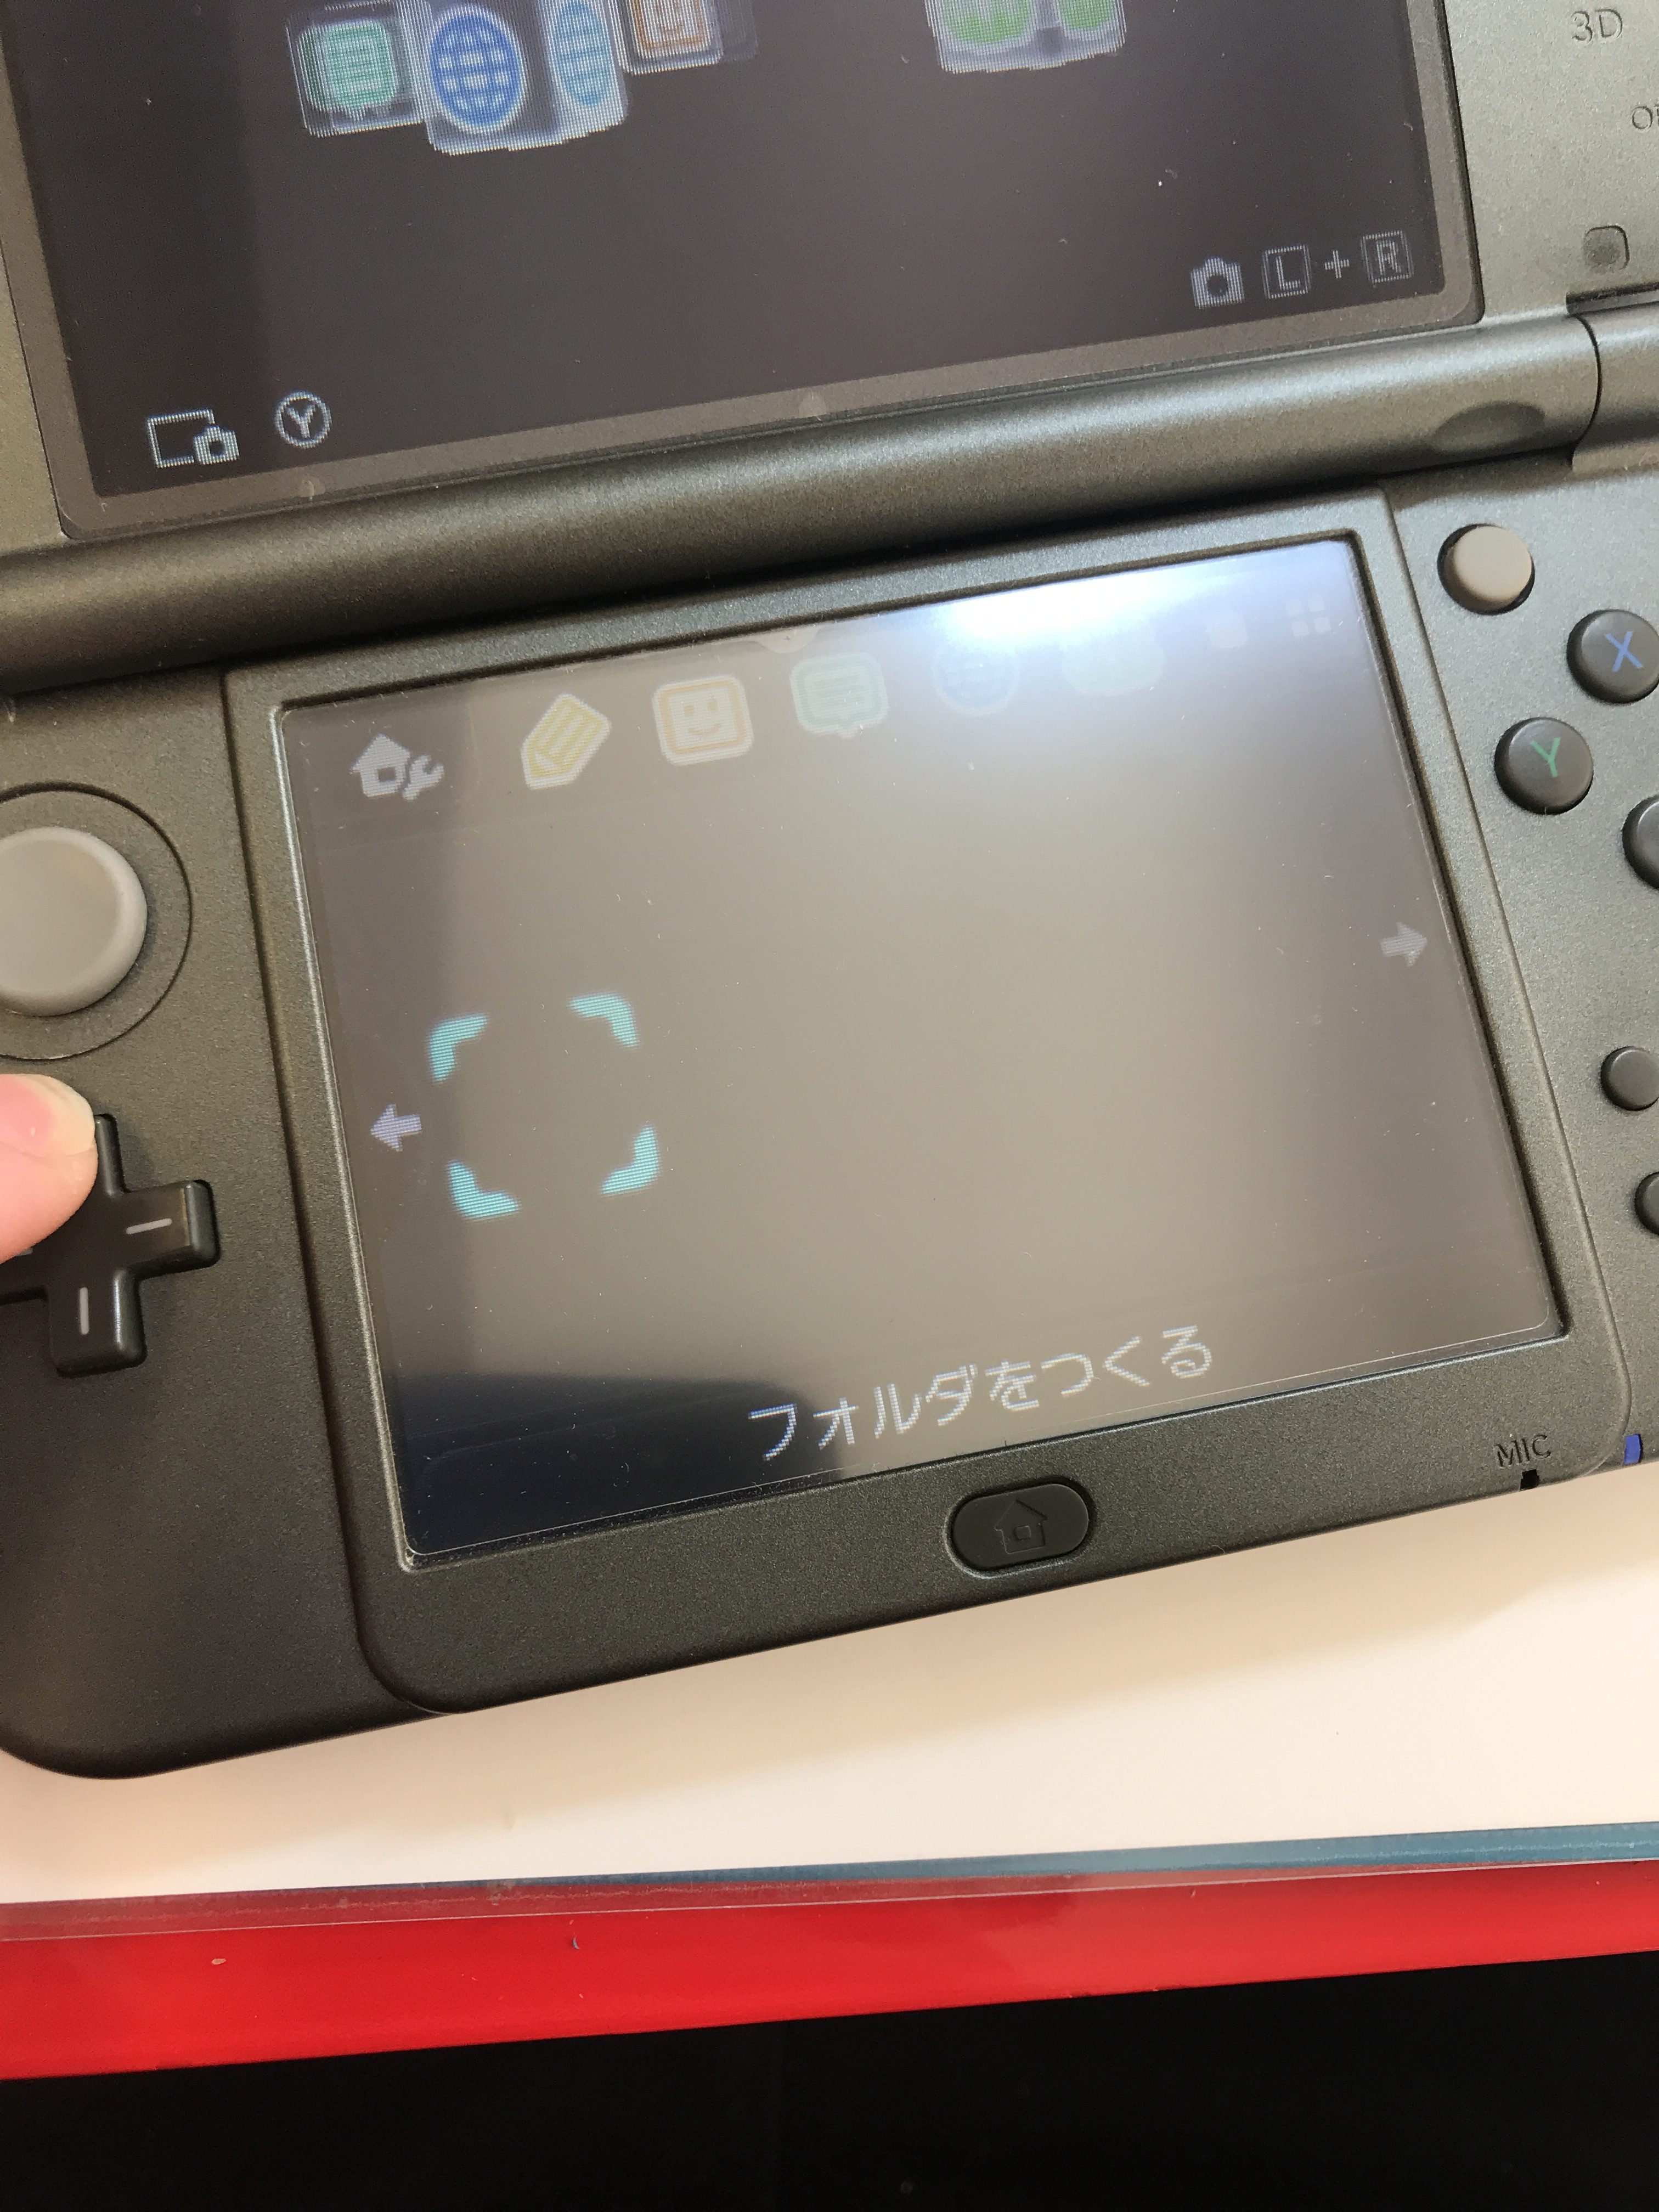 任天堂 New3dsll 十字キーの上が入力されたりされなかったり パーツの交換修理 Switch Nintendo3ds Psp 修理のゲームホスピタル Switch Nintendo3ds ニンテンドーds Psp 修理